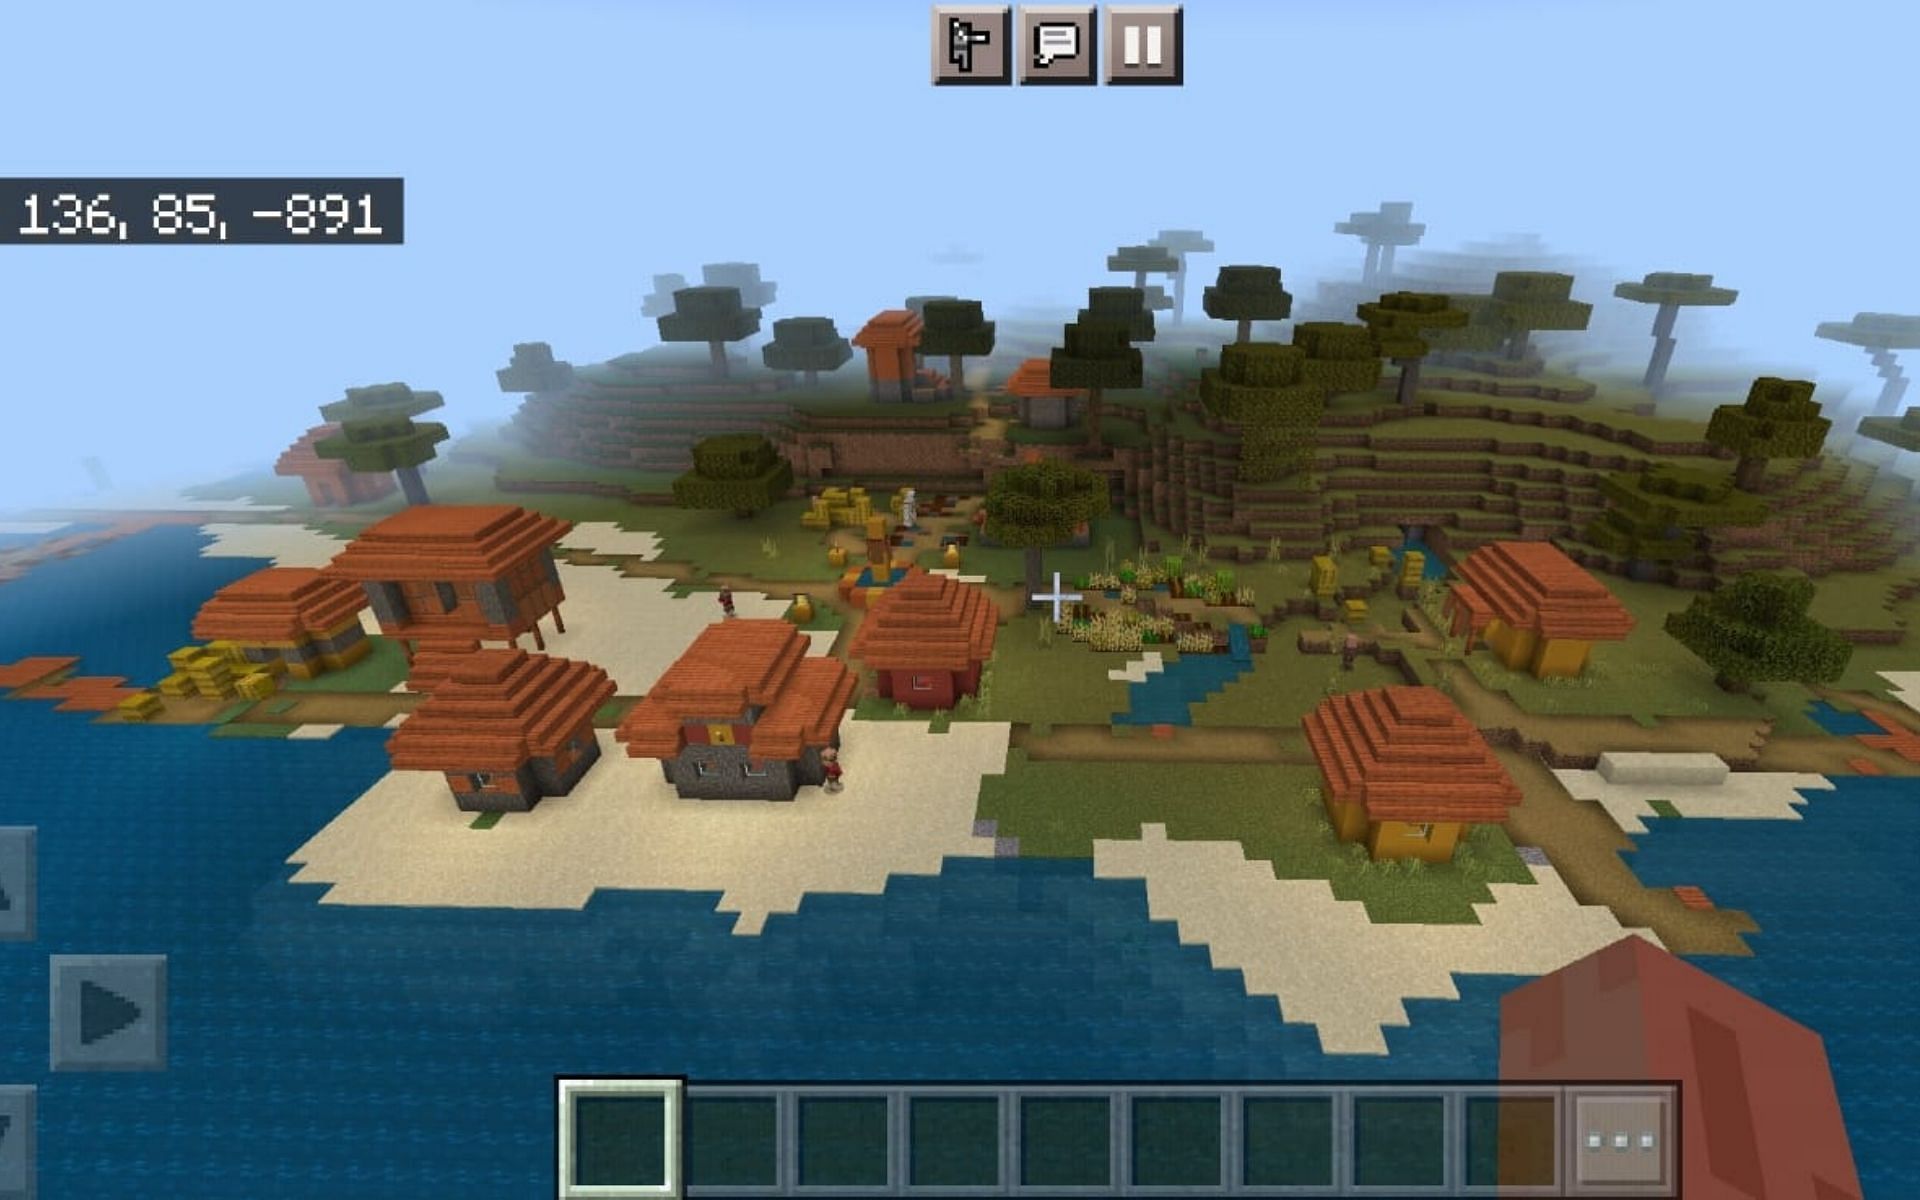 A Savanna Village (Image via Minecraft)